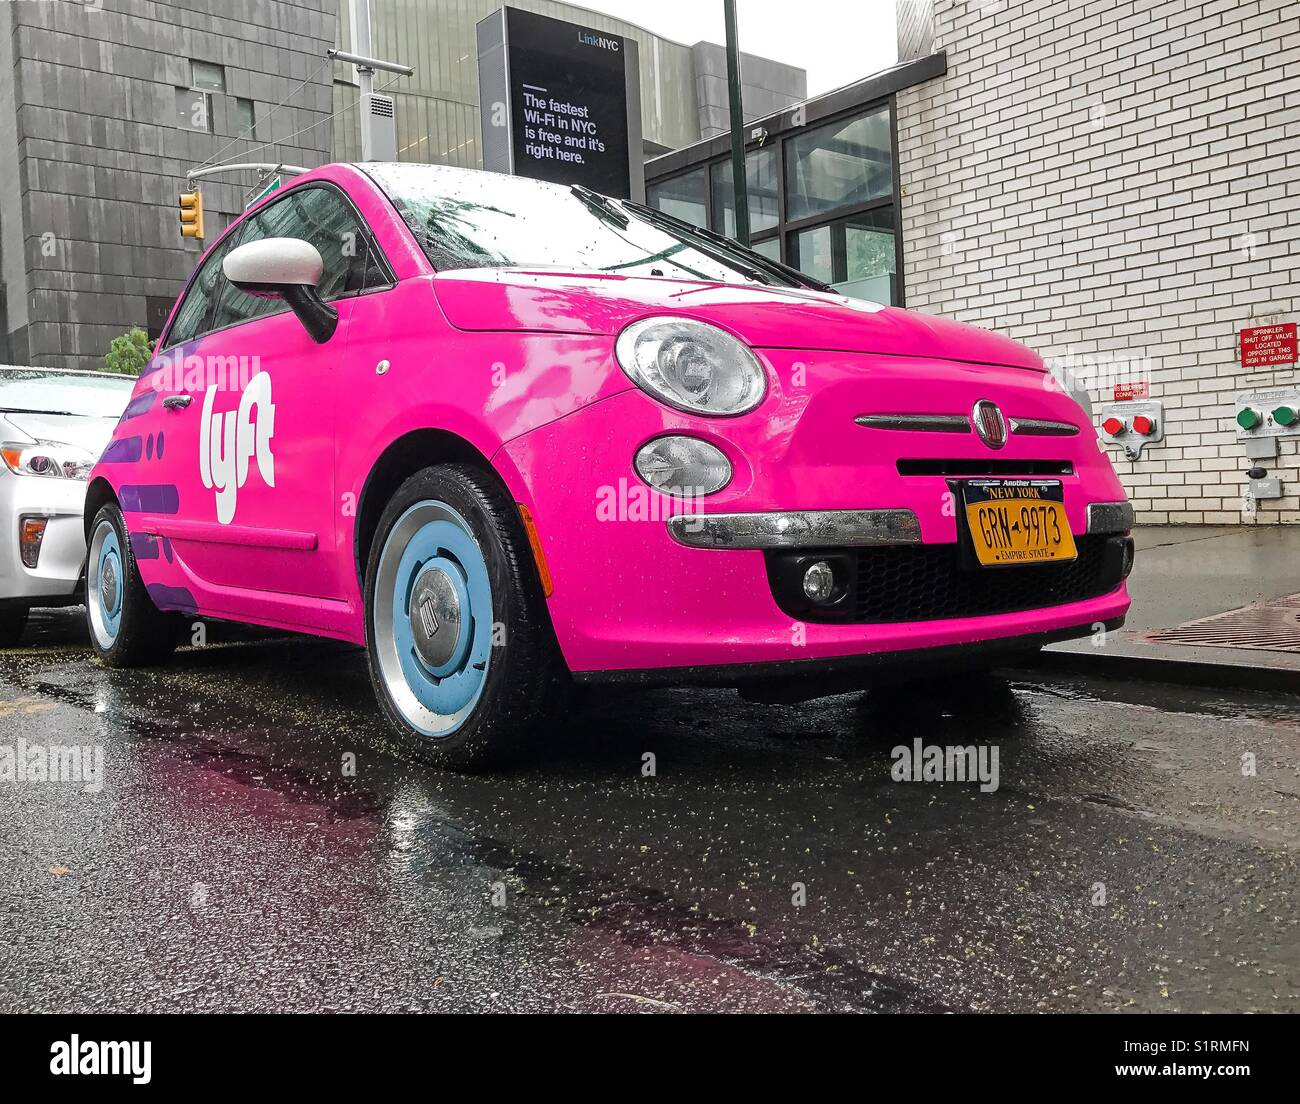 Fiat 500 peint en rose et portant un logo Lyft est stationné dans les rues de Manhattan. Banque D'Images